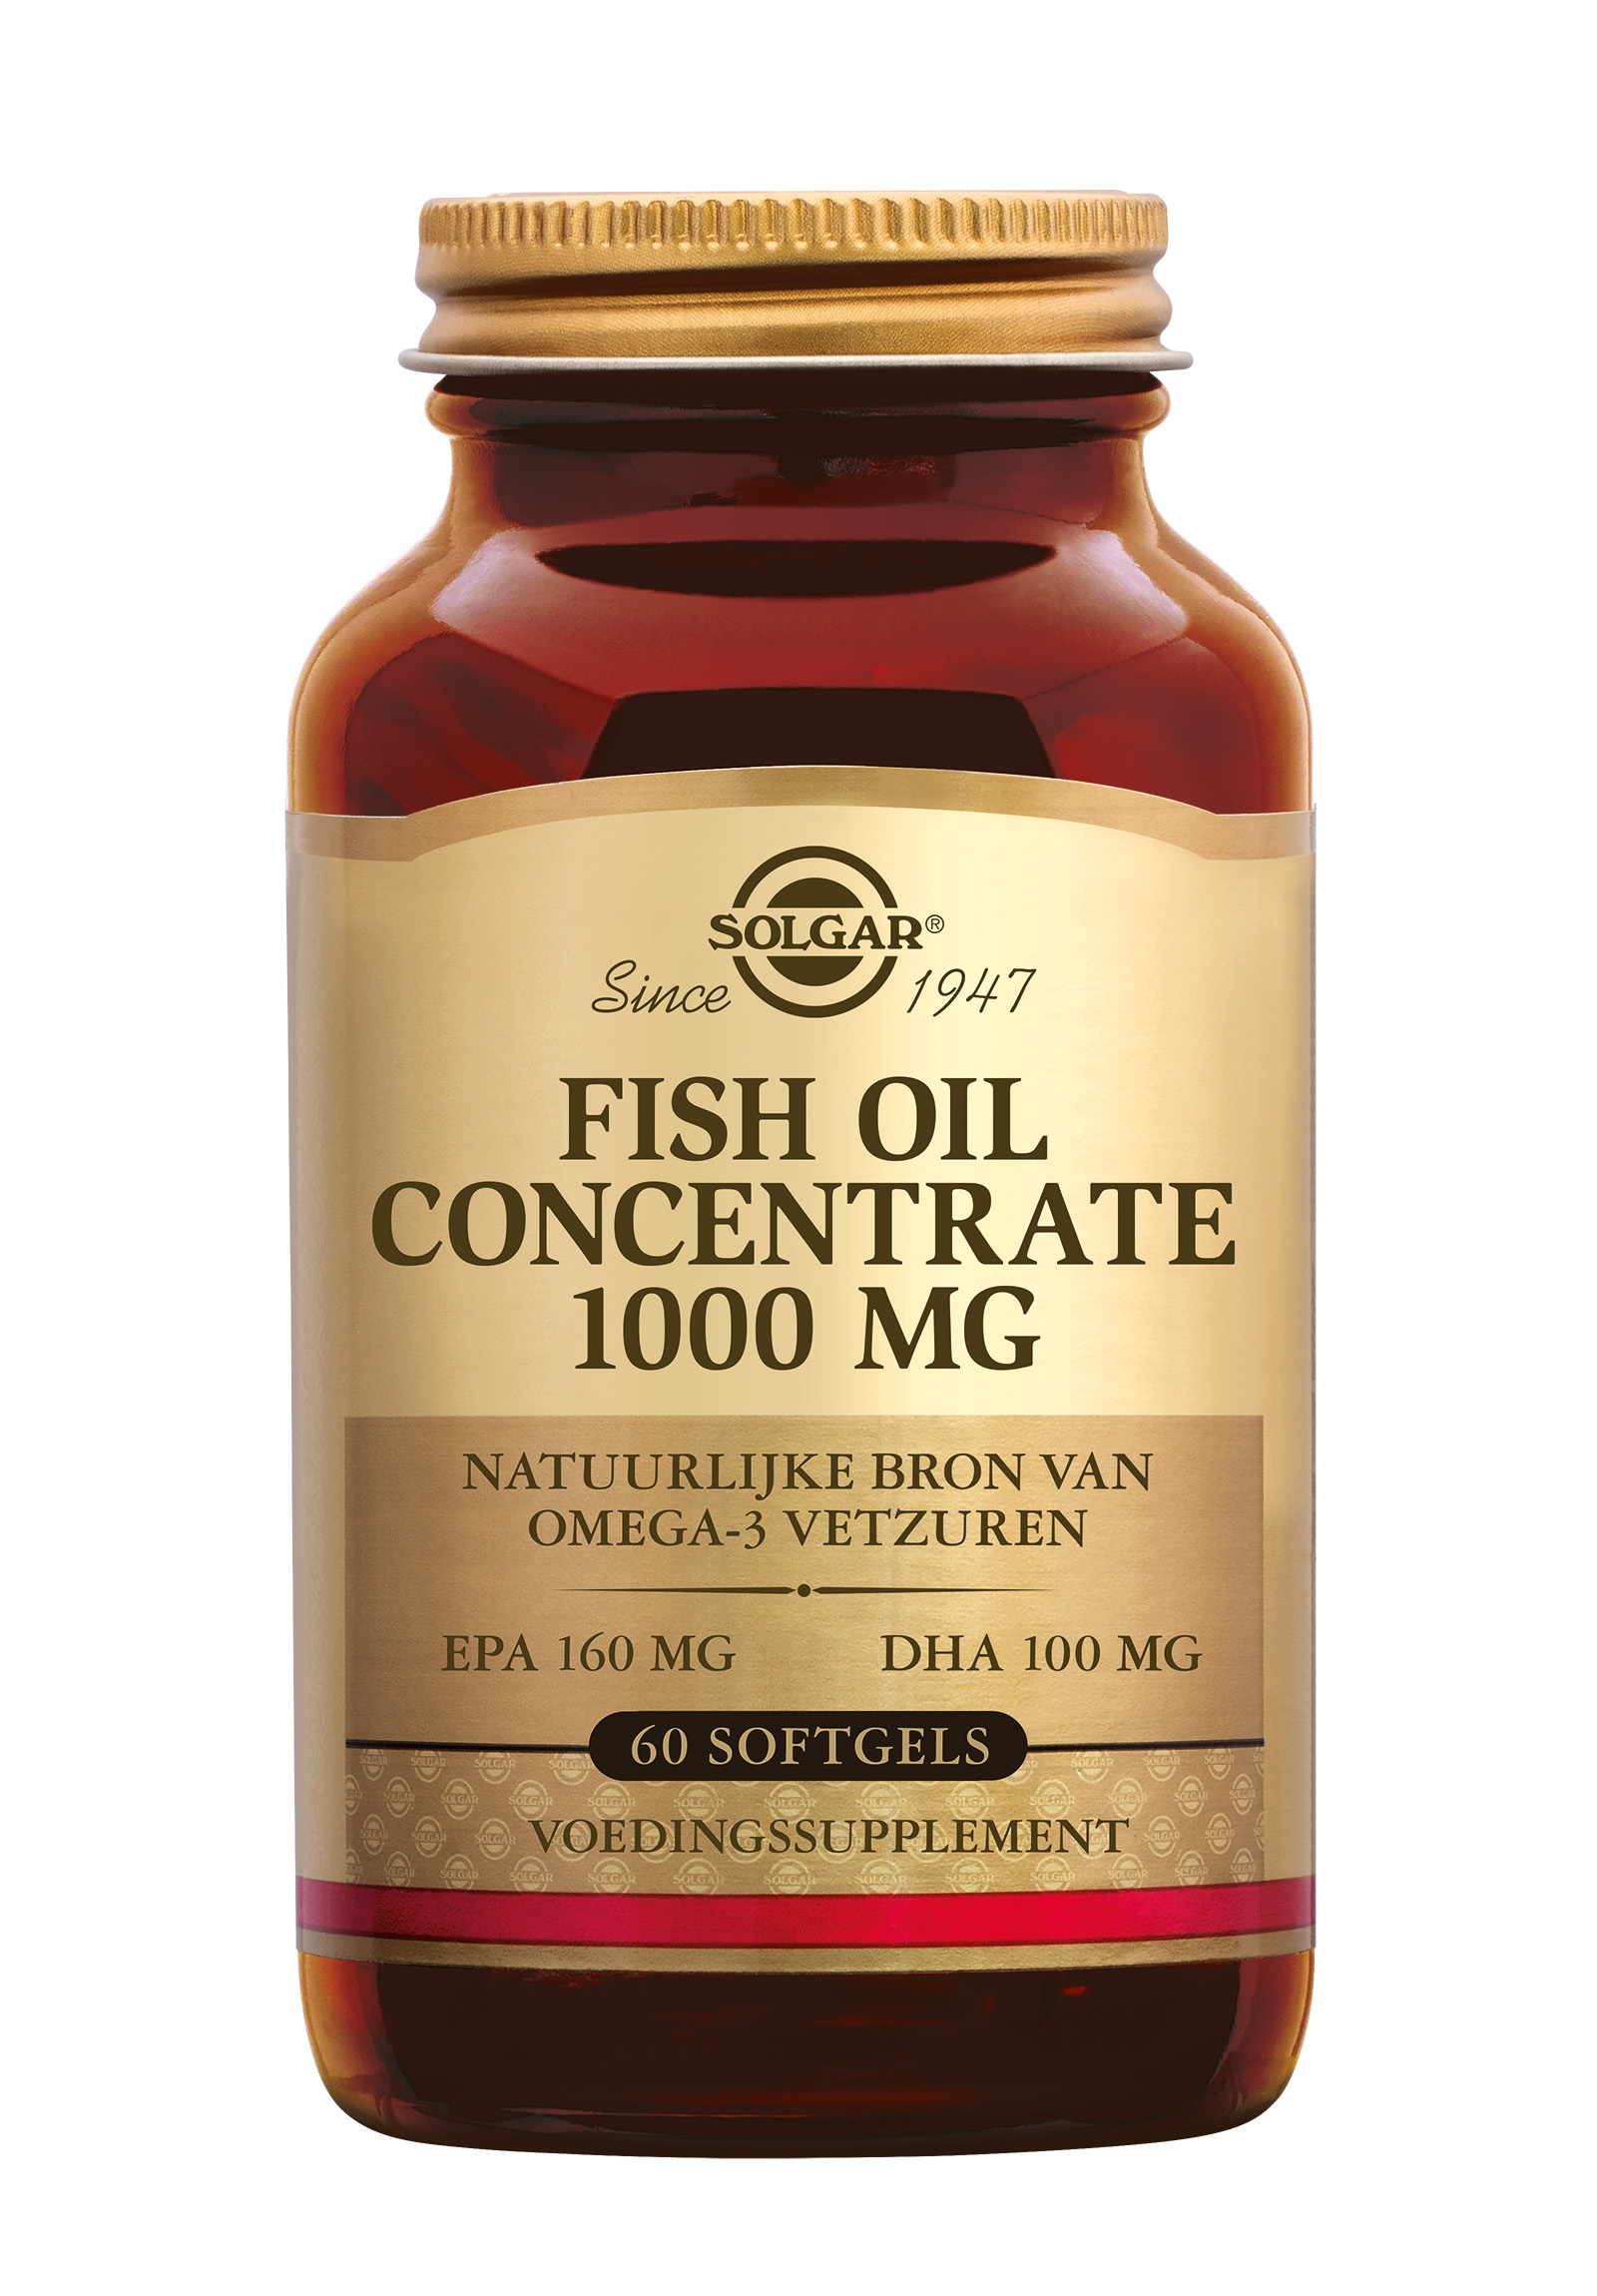 Solgar Fish Oil Concentrate 1000 mg (60 stuks)